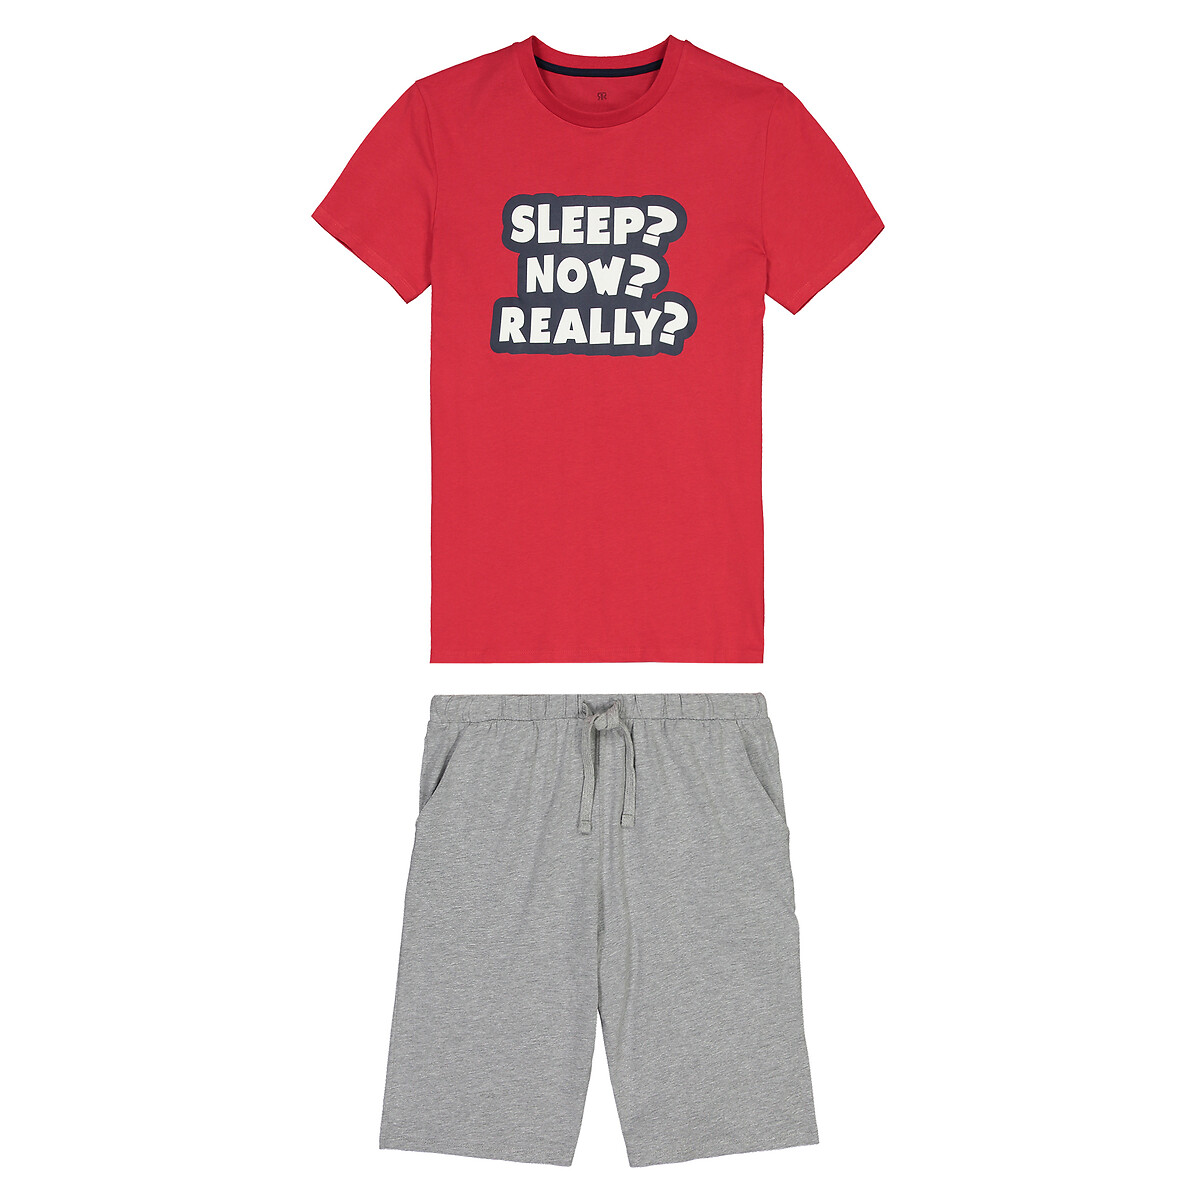 Bas de pyjama short boy leg en maille côtelée BOY LEG La Redoute Garçon Vêtements Sous-vêtements vêtements de nuit Pyjamas 